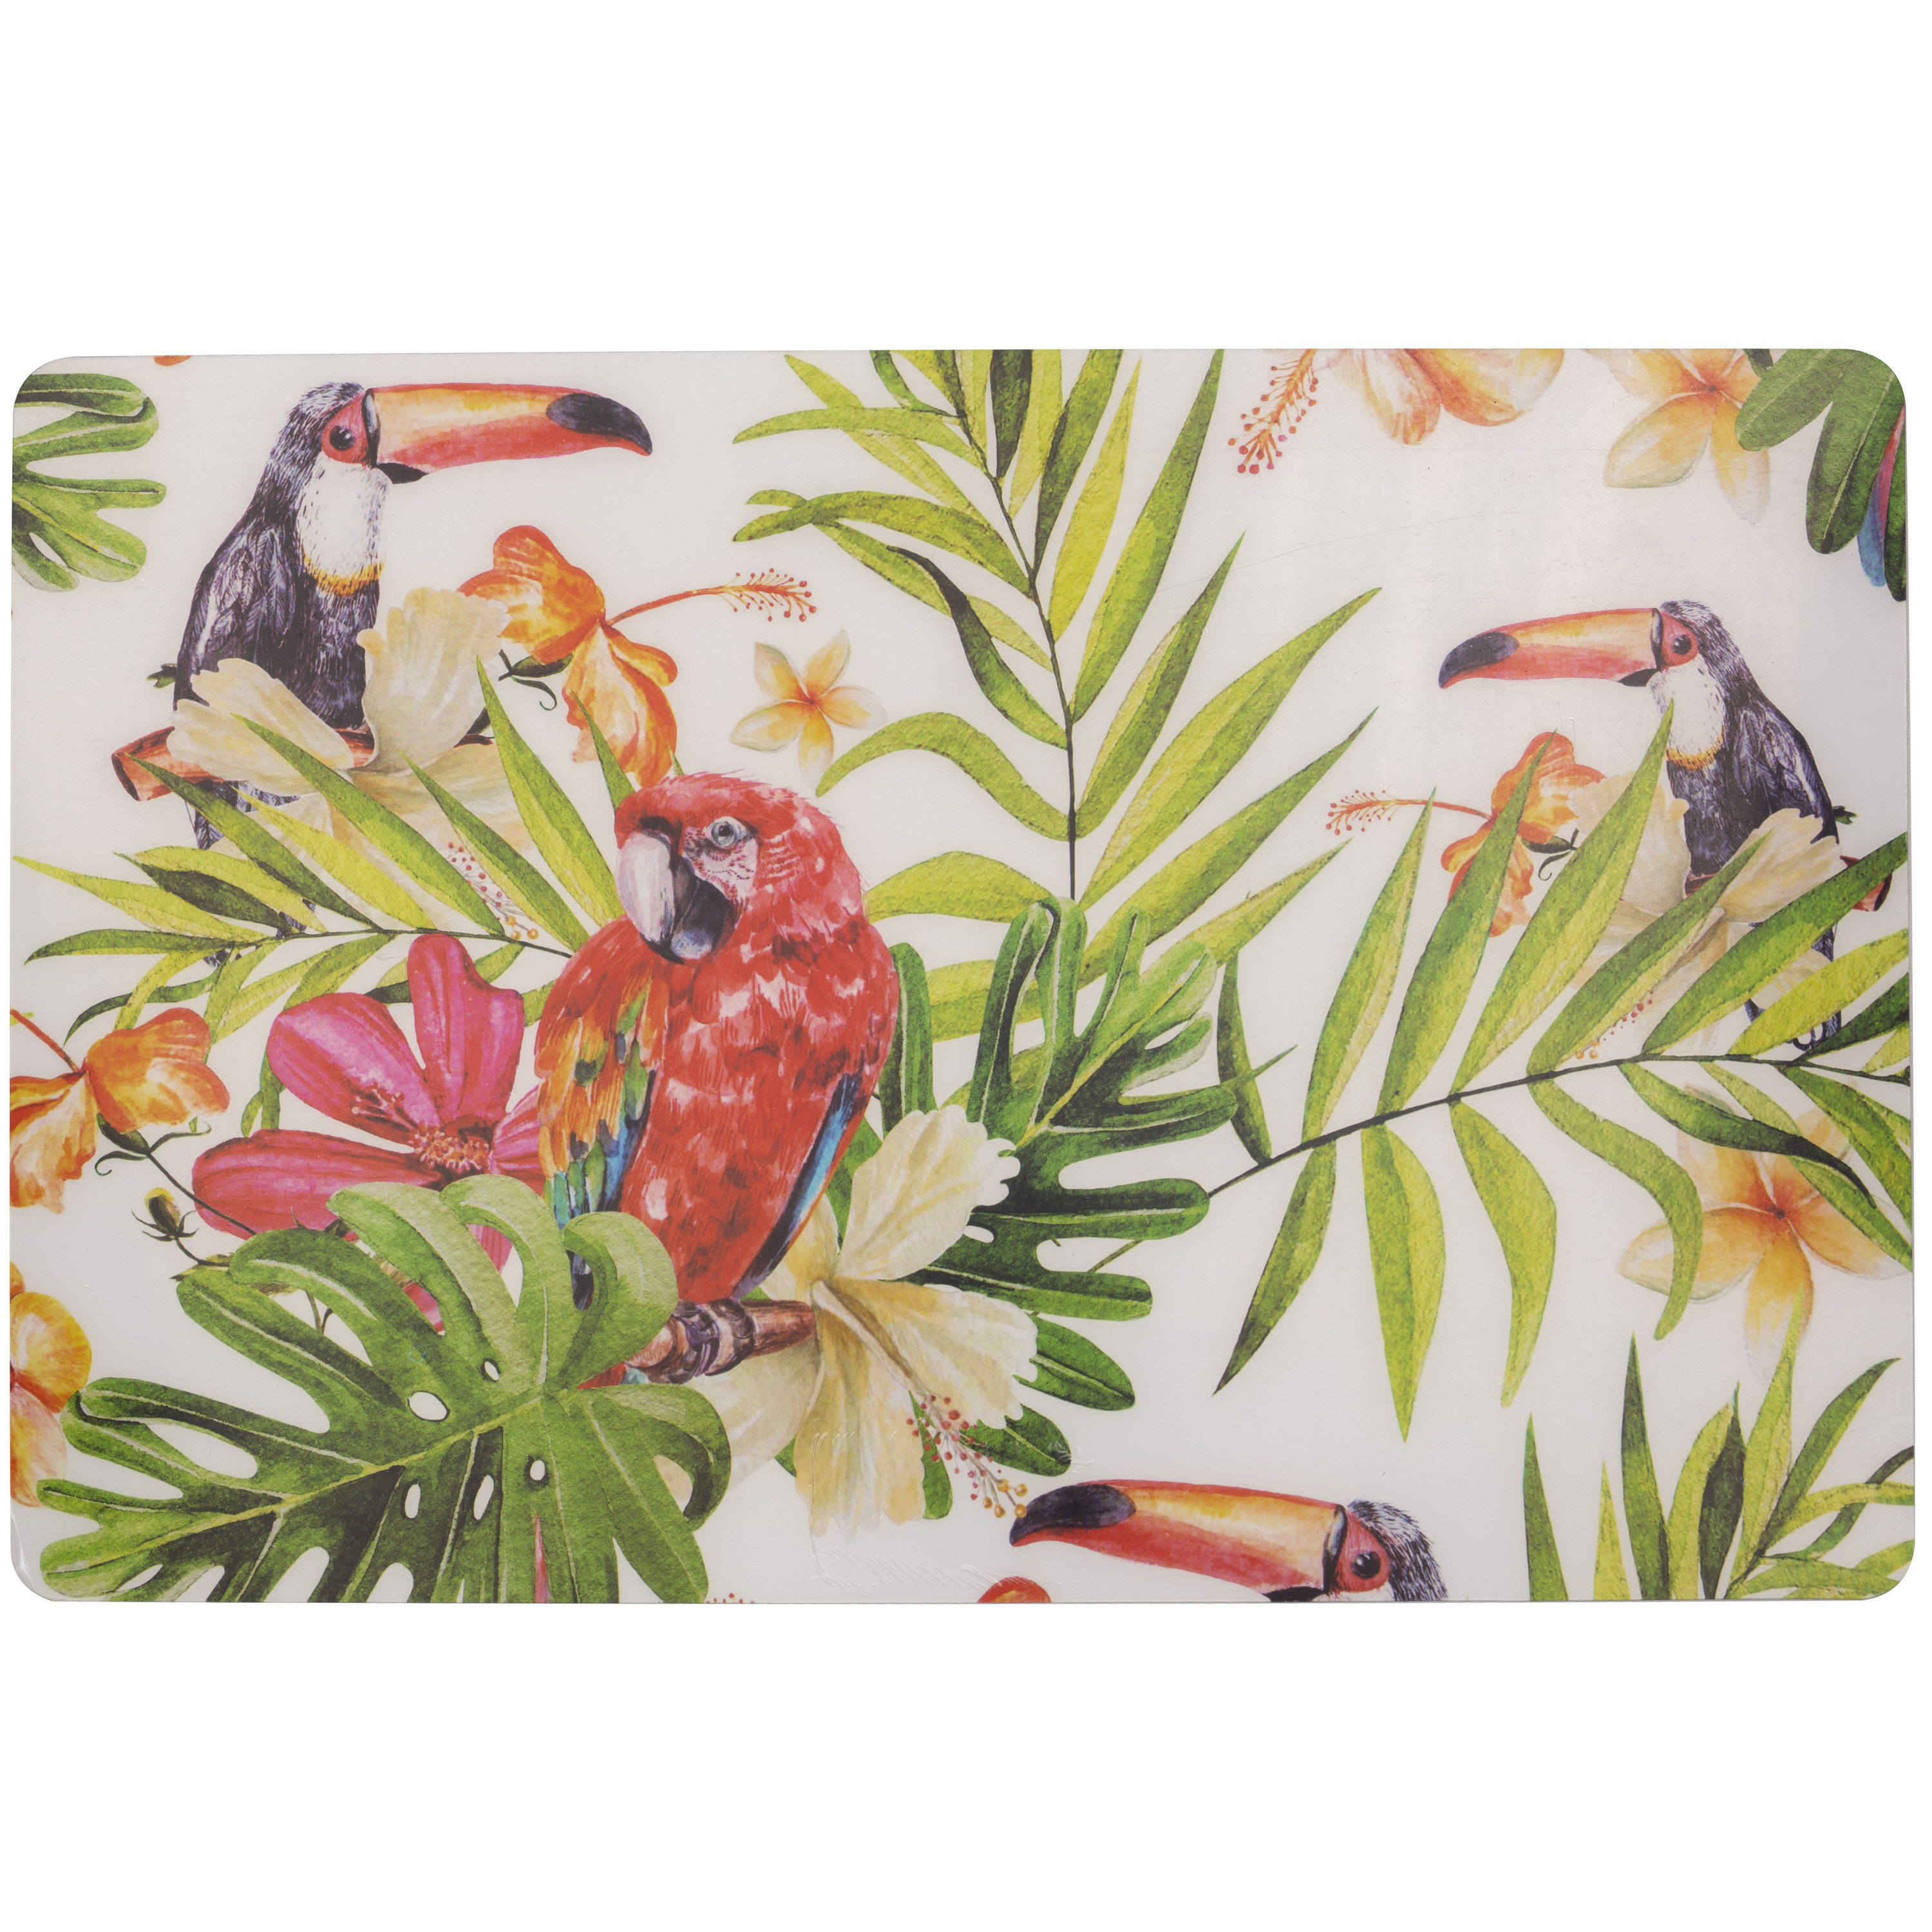 Cosy & Trendy 2x Rechthoekige placemats tropische toekan print 29 x cm -